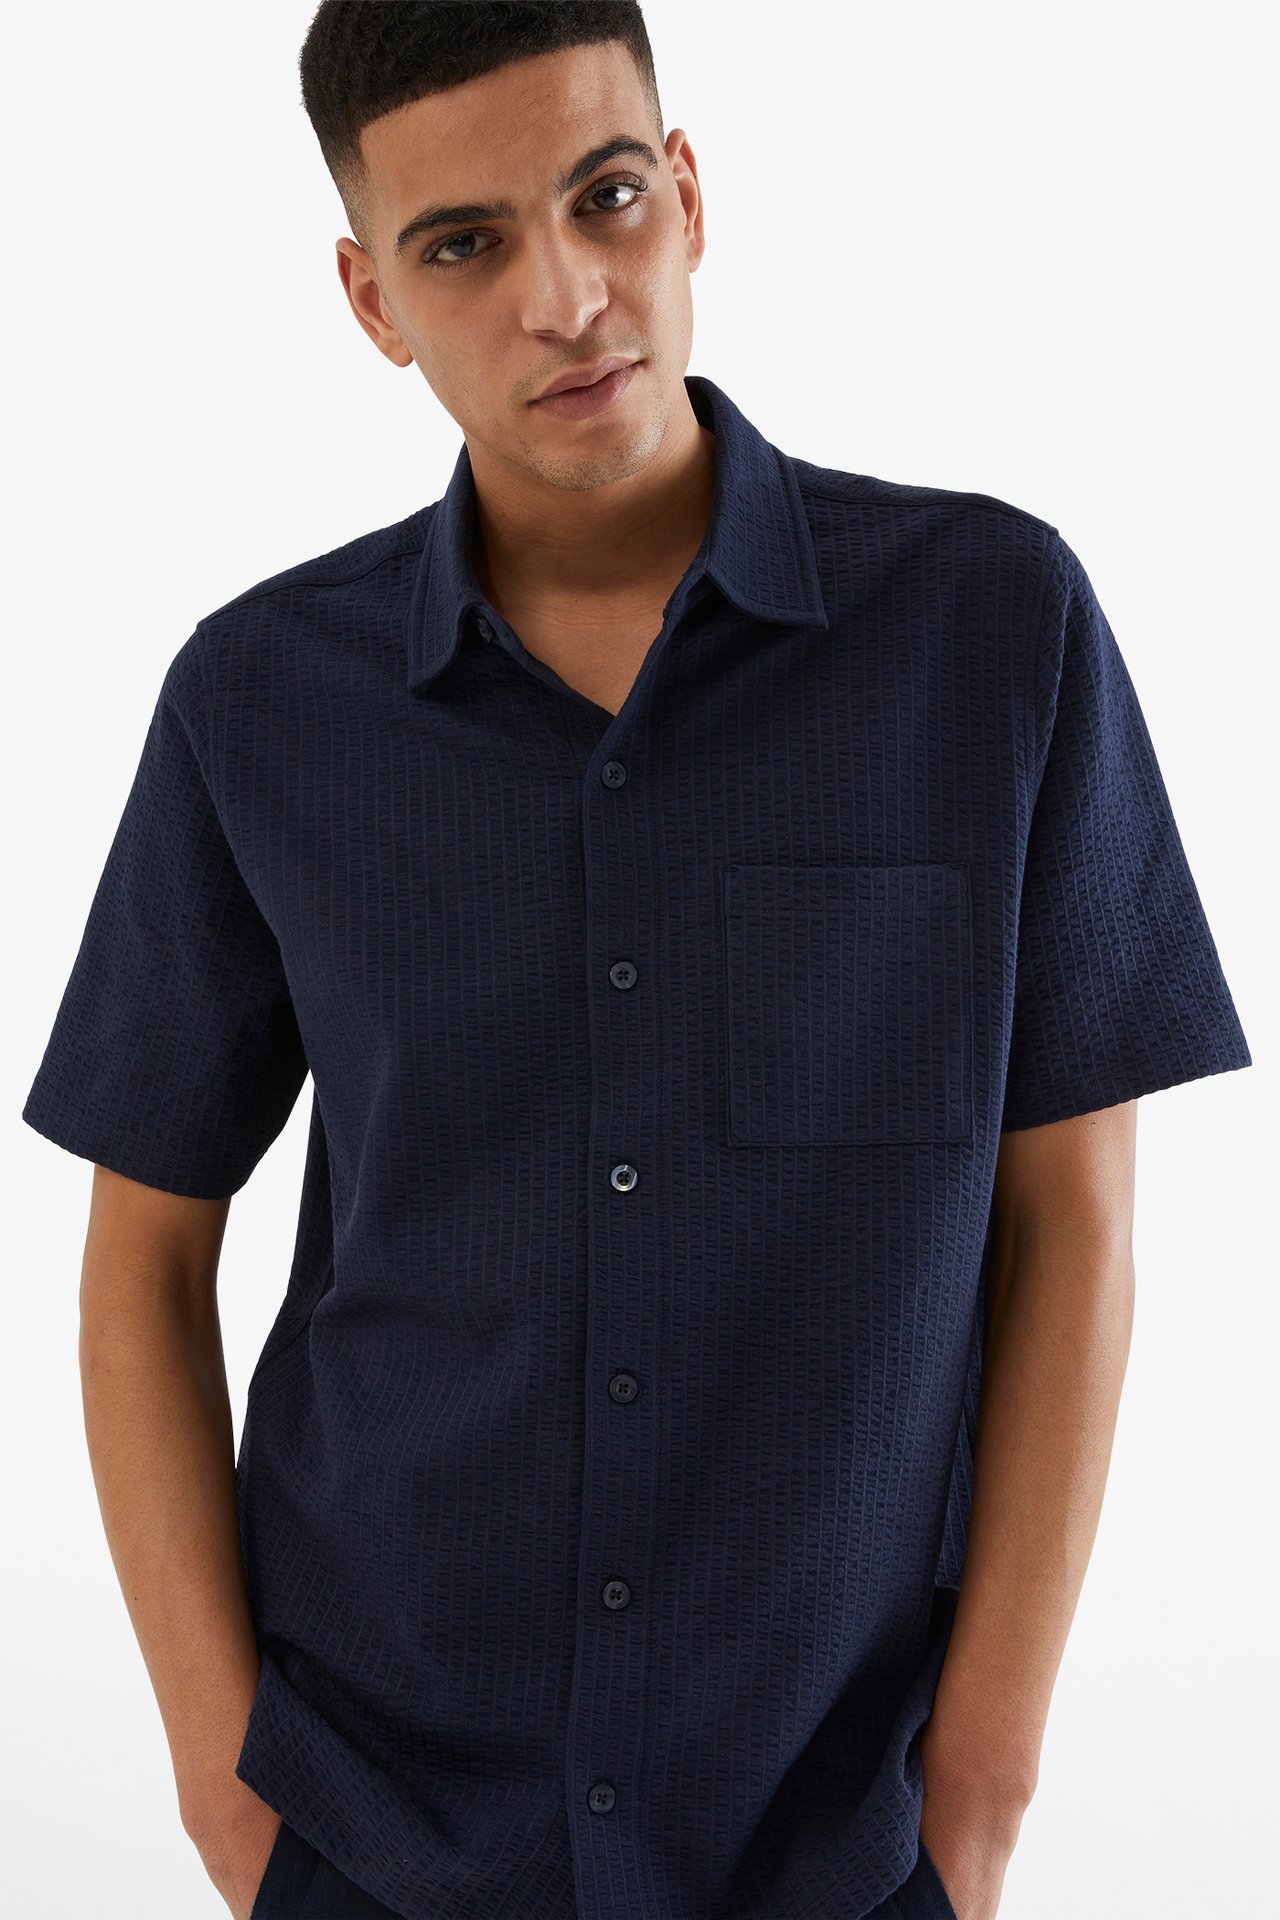 Tennisskjorte i trikot - Mørkeblå - 189cm / Storlek: M - 2